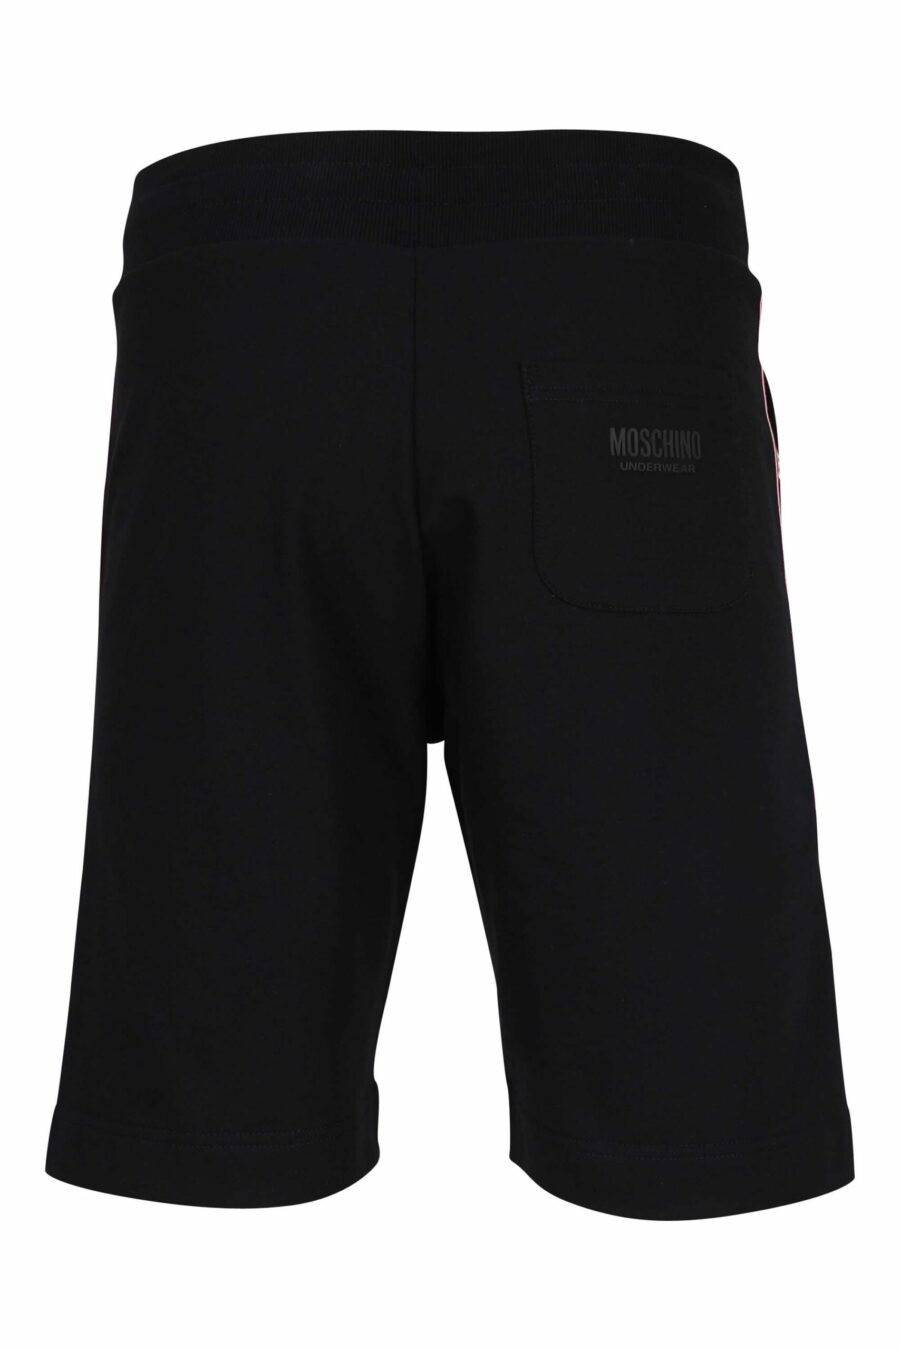 Pantalón de chándal corto negro con logo en cinta vertical - 667113624945 2 scaled